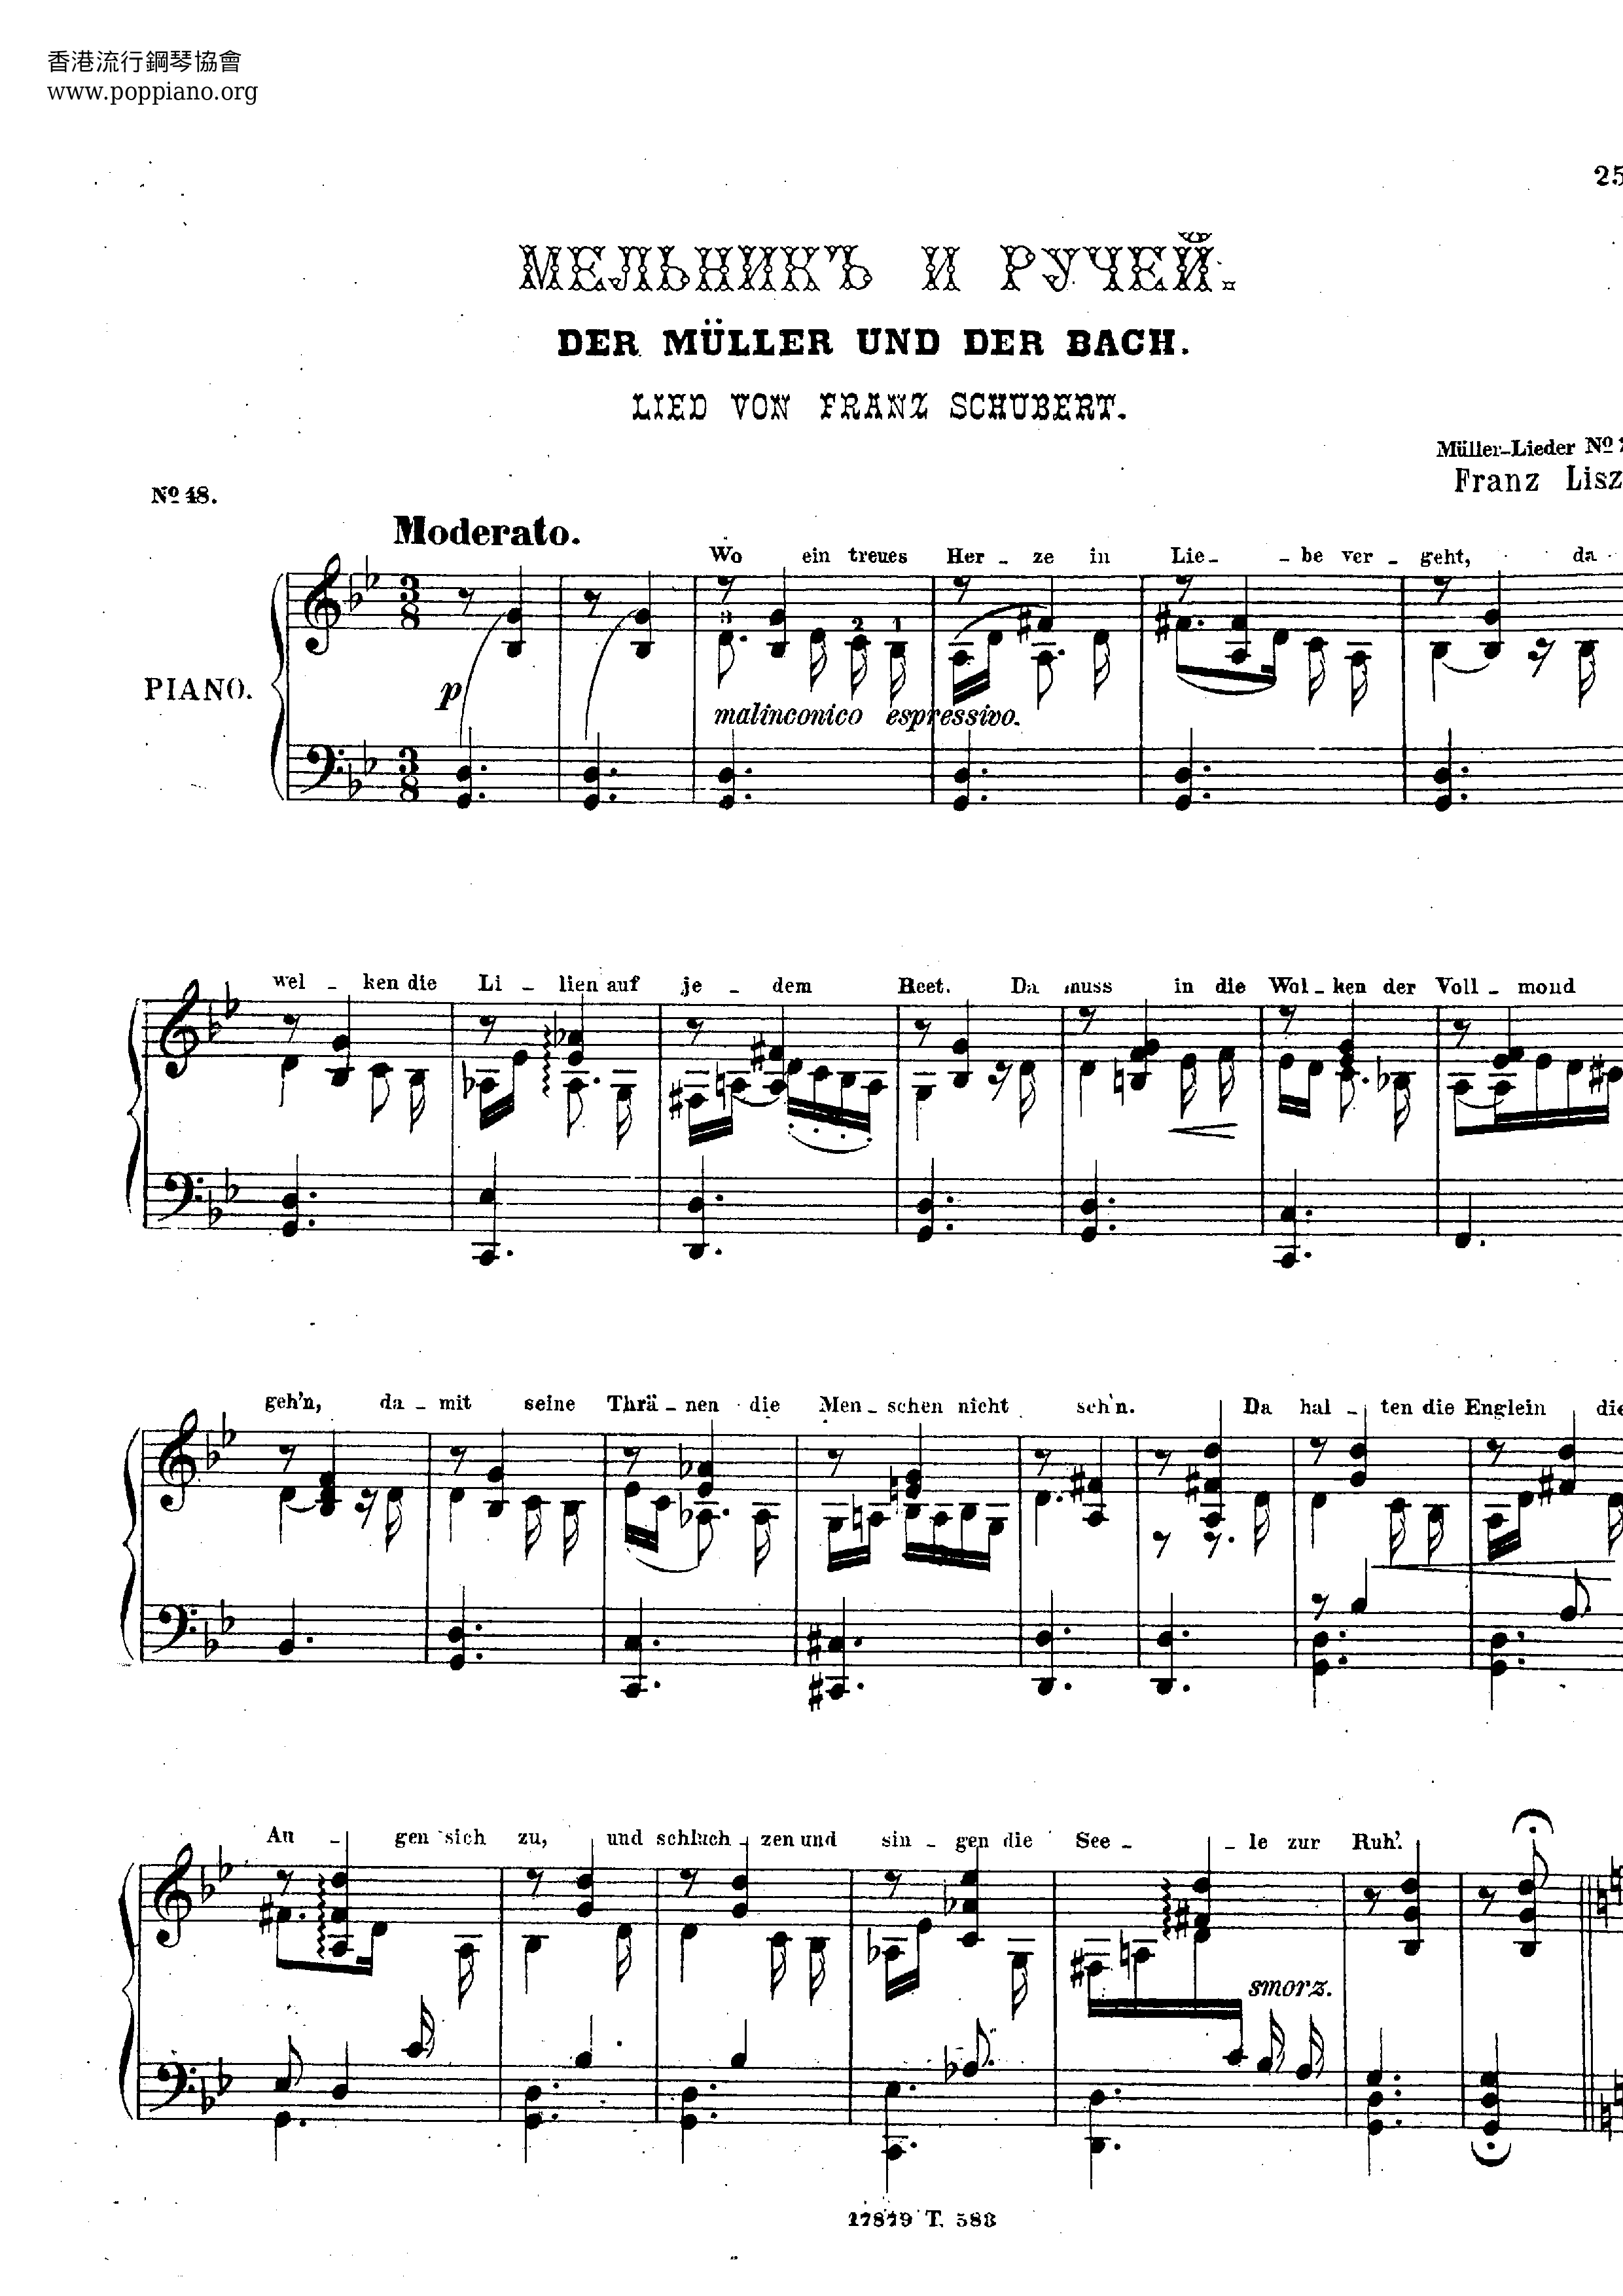 Der Mueller Der Bachピアノ譜